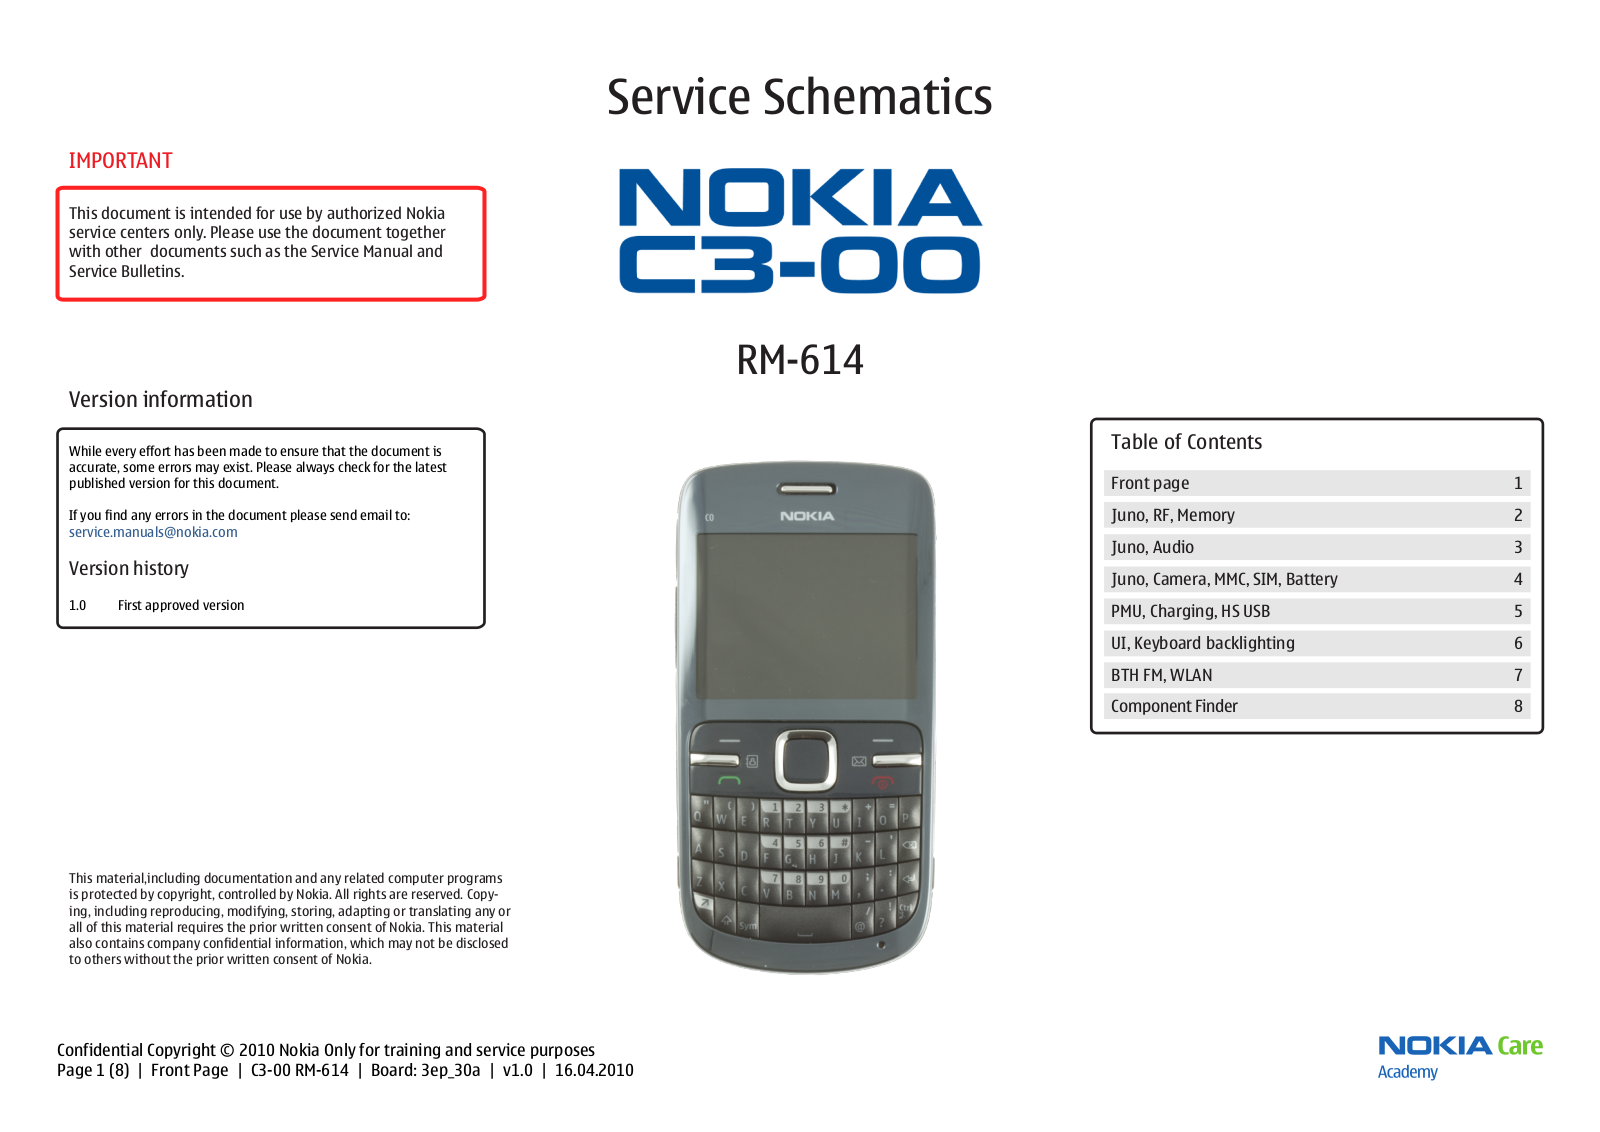 Nokia C3-00 RM-614 Schematic